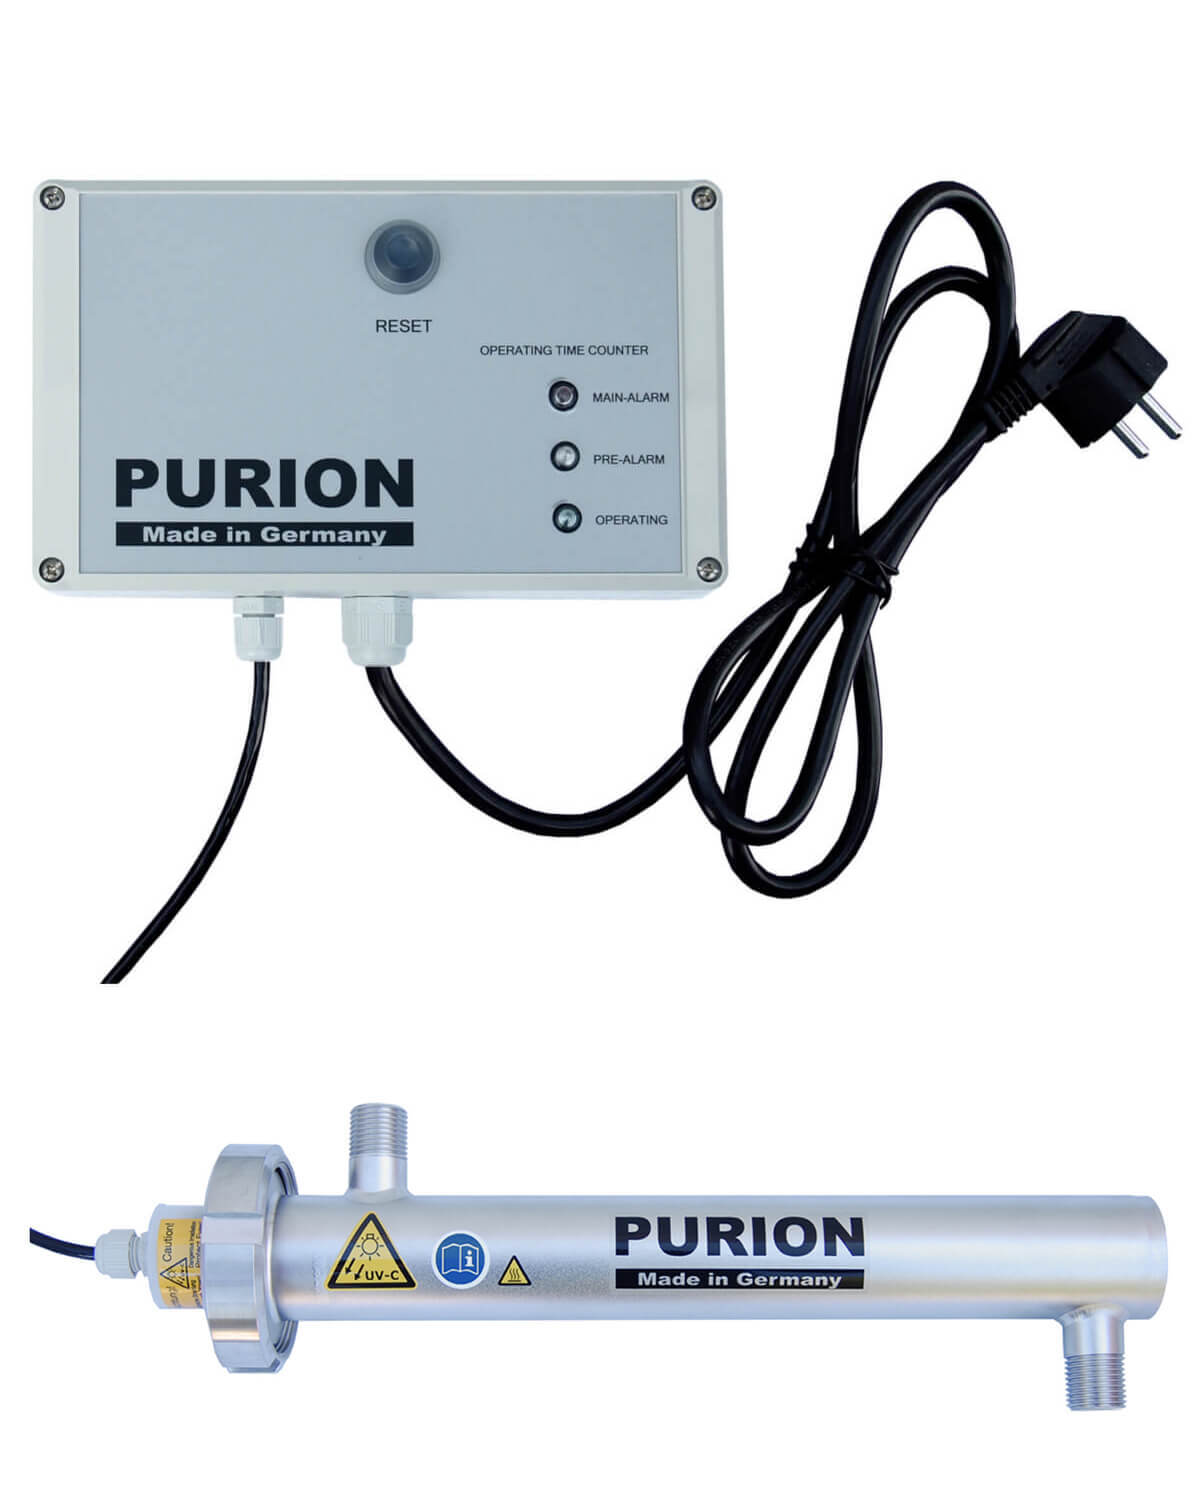 Der PURION 500 PRO OTC Plus, hergestellt von der PURION GmbH, ist ein leistungsstarkes Gerät, das UV-C-Strahlung nutzt, um jede Oberfläche oder jedes Objekt effizient zu desinfizieren.